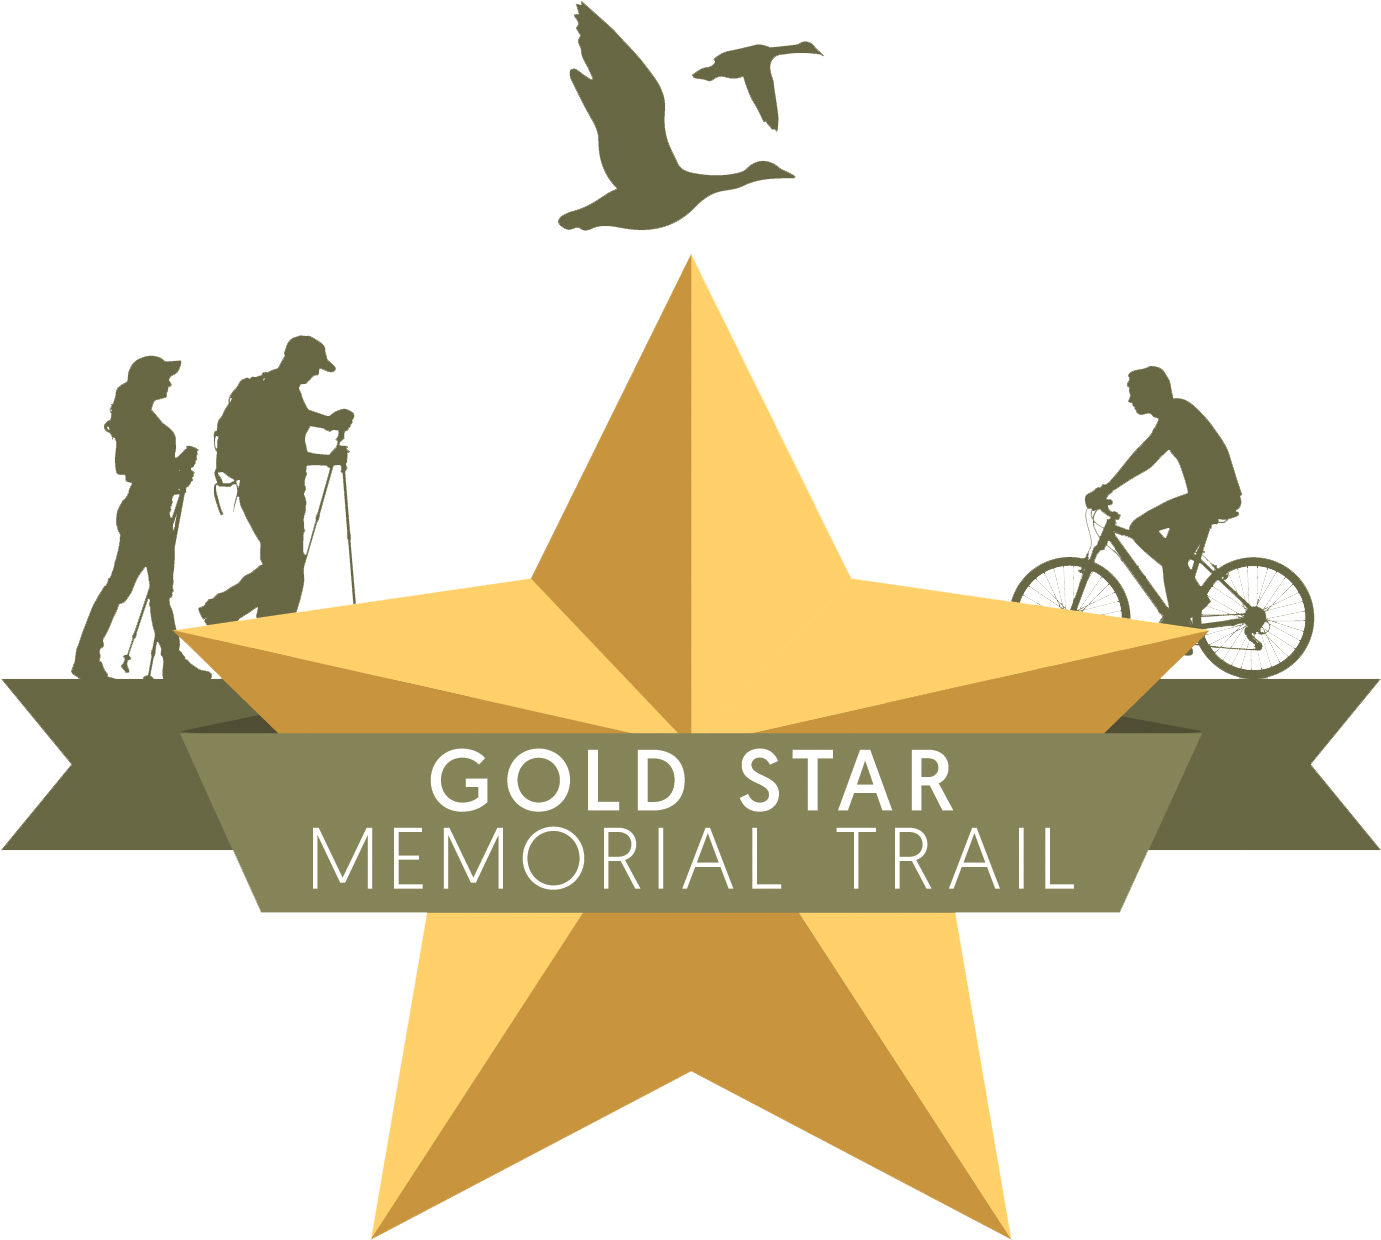 Gold Star Memorial Trail (1500x1327)